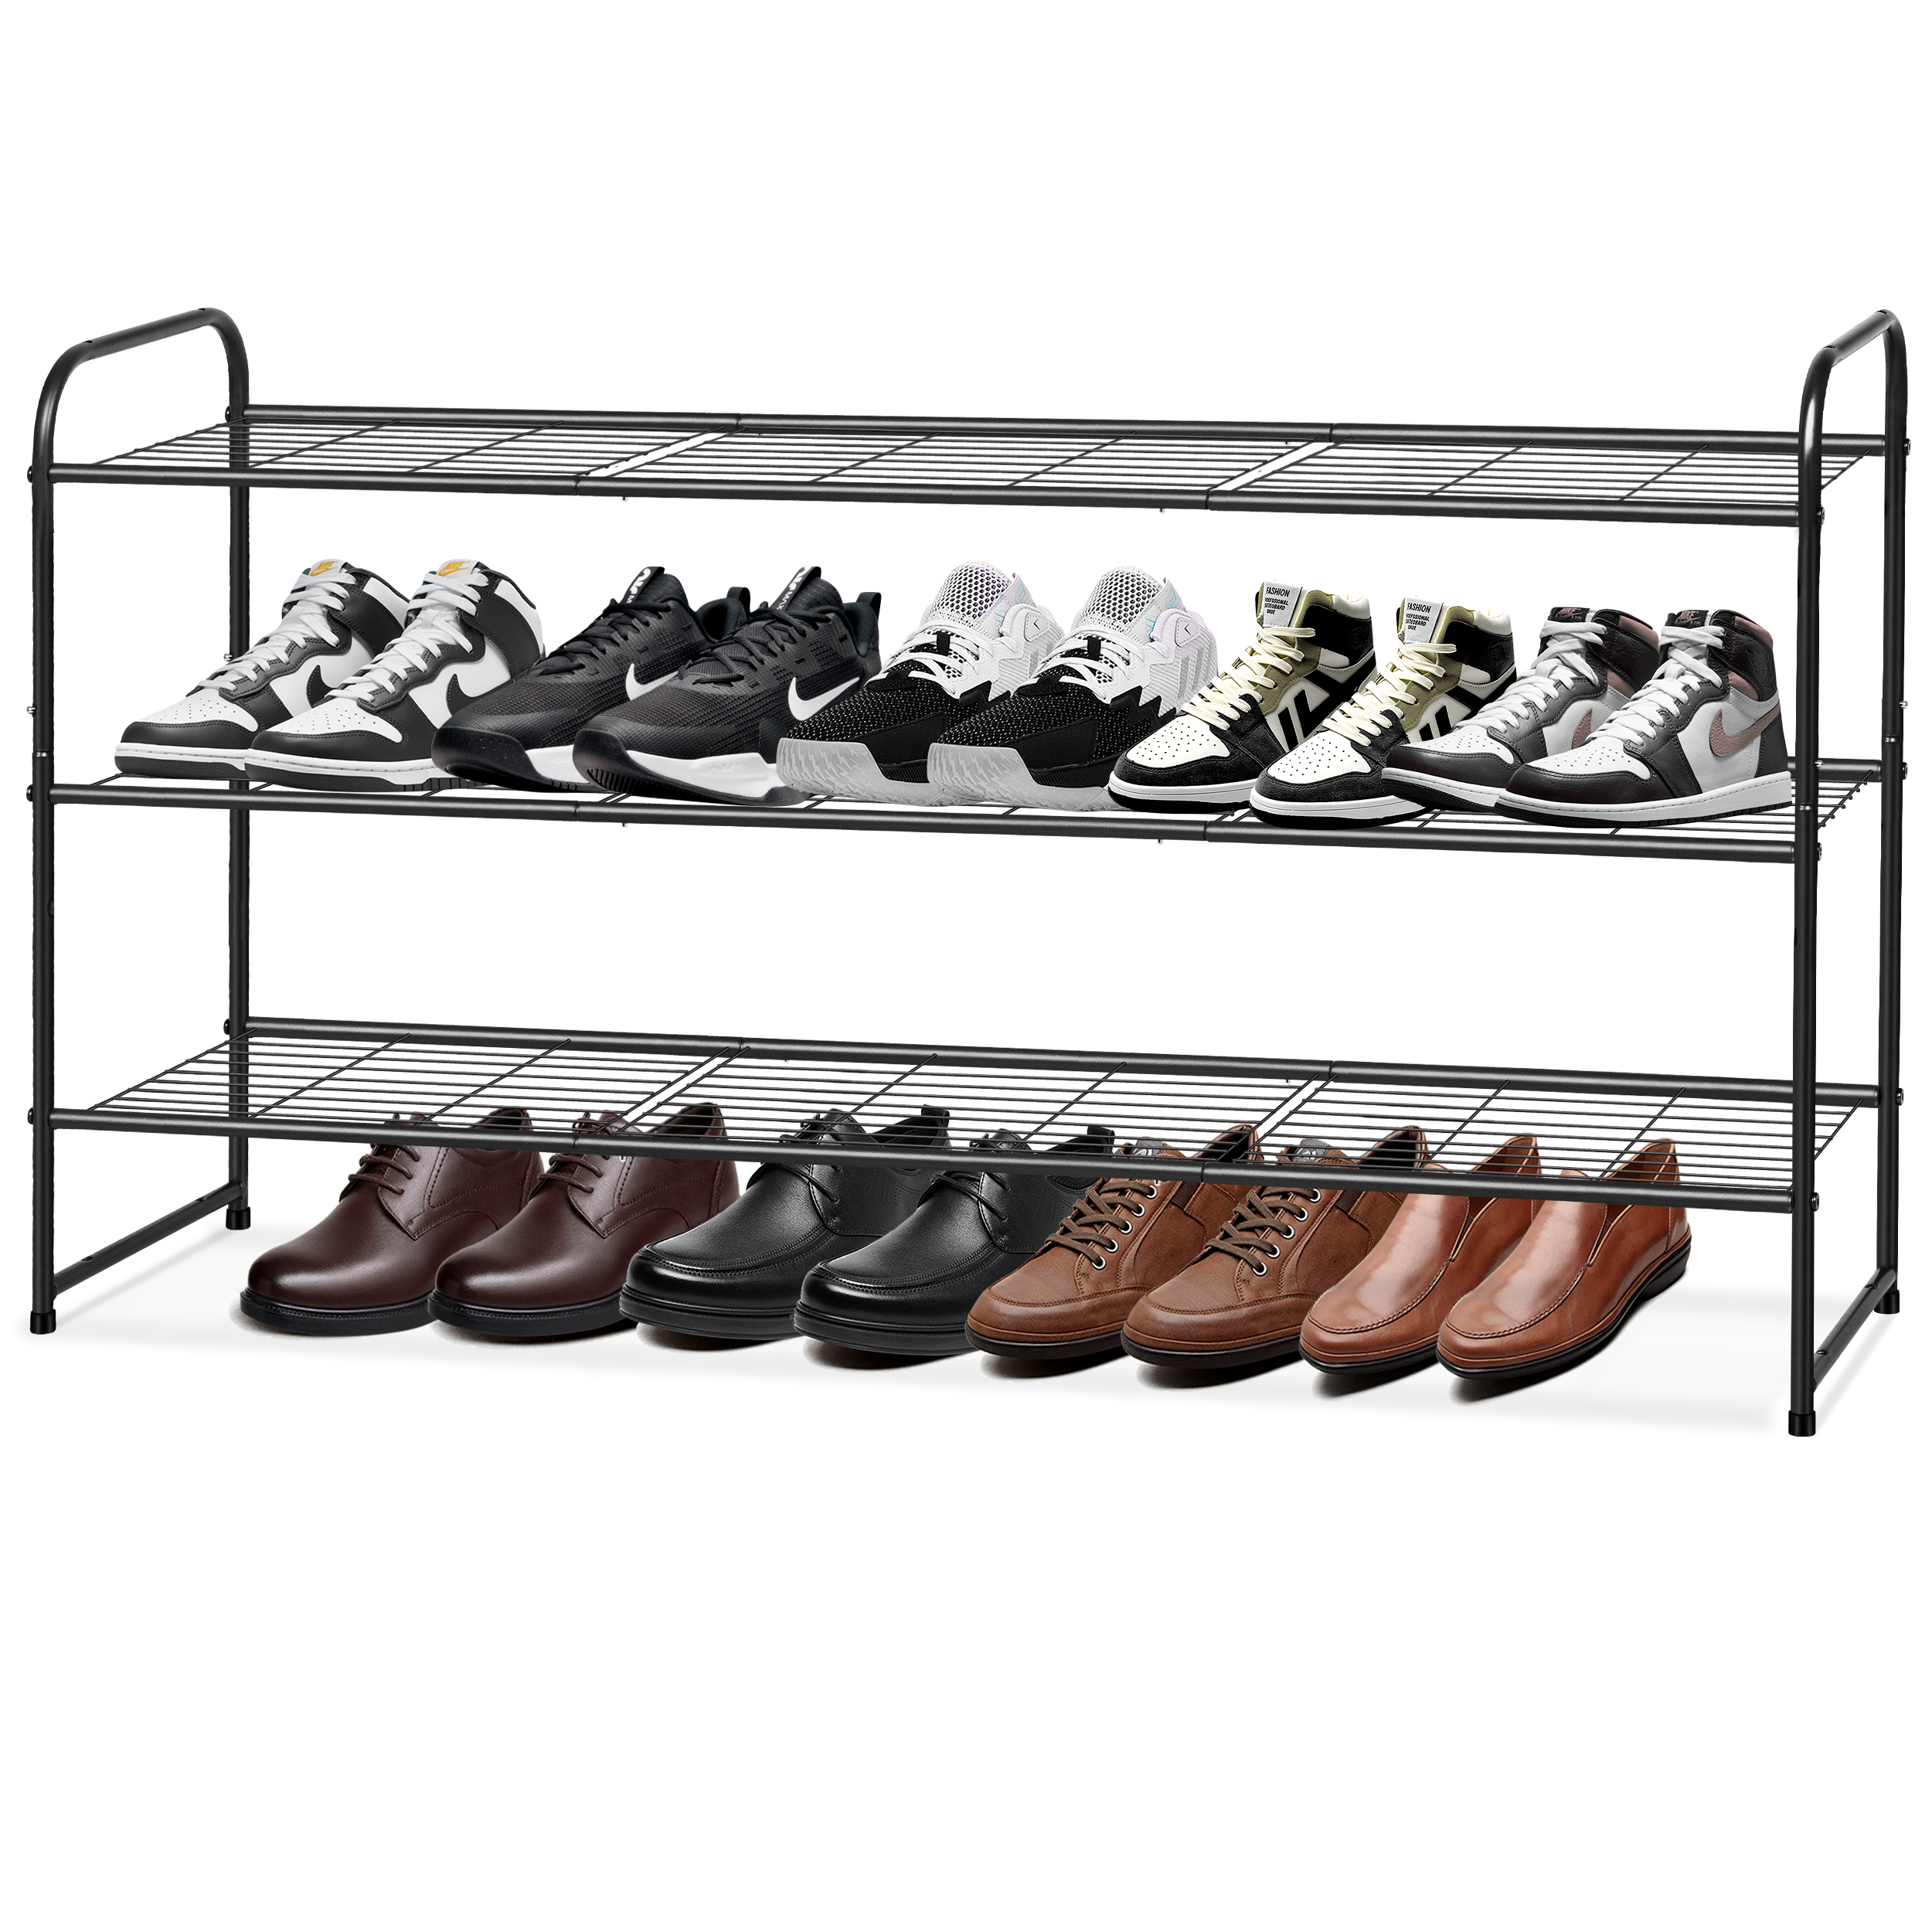 KEETDY Long 3-Tier Shoe Rack for Closet Floor Entryway, Wide Shoe